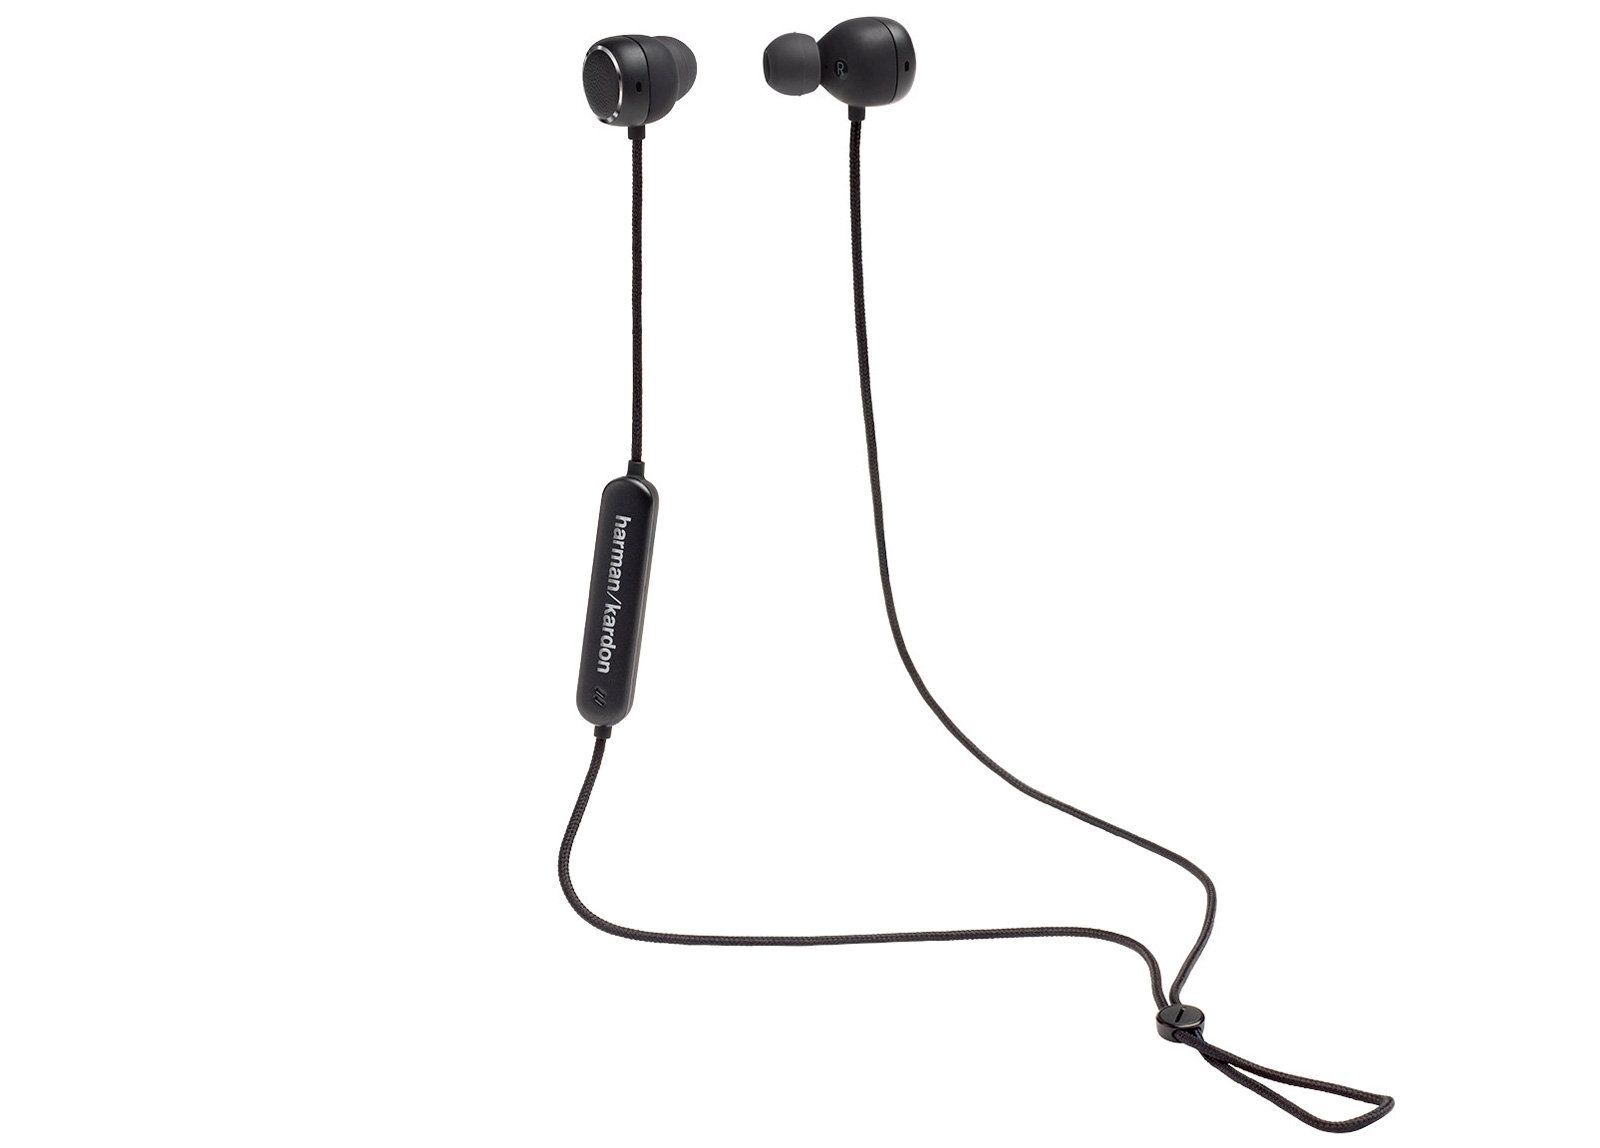 Harman Kardon FLY BT earphones - Harman Kardon&#039;s new FLY earphones are a serious Apple AirPods competitor